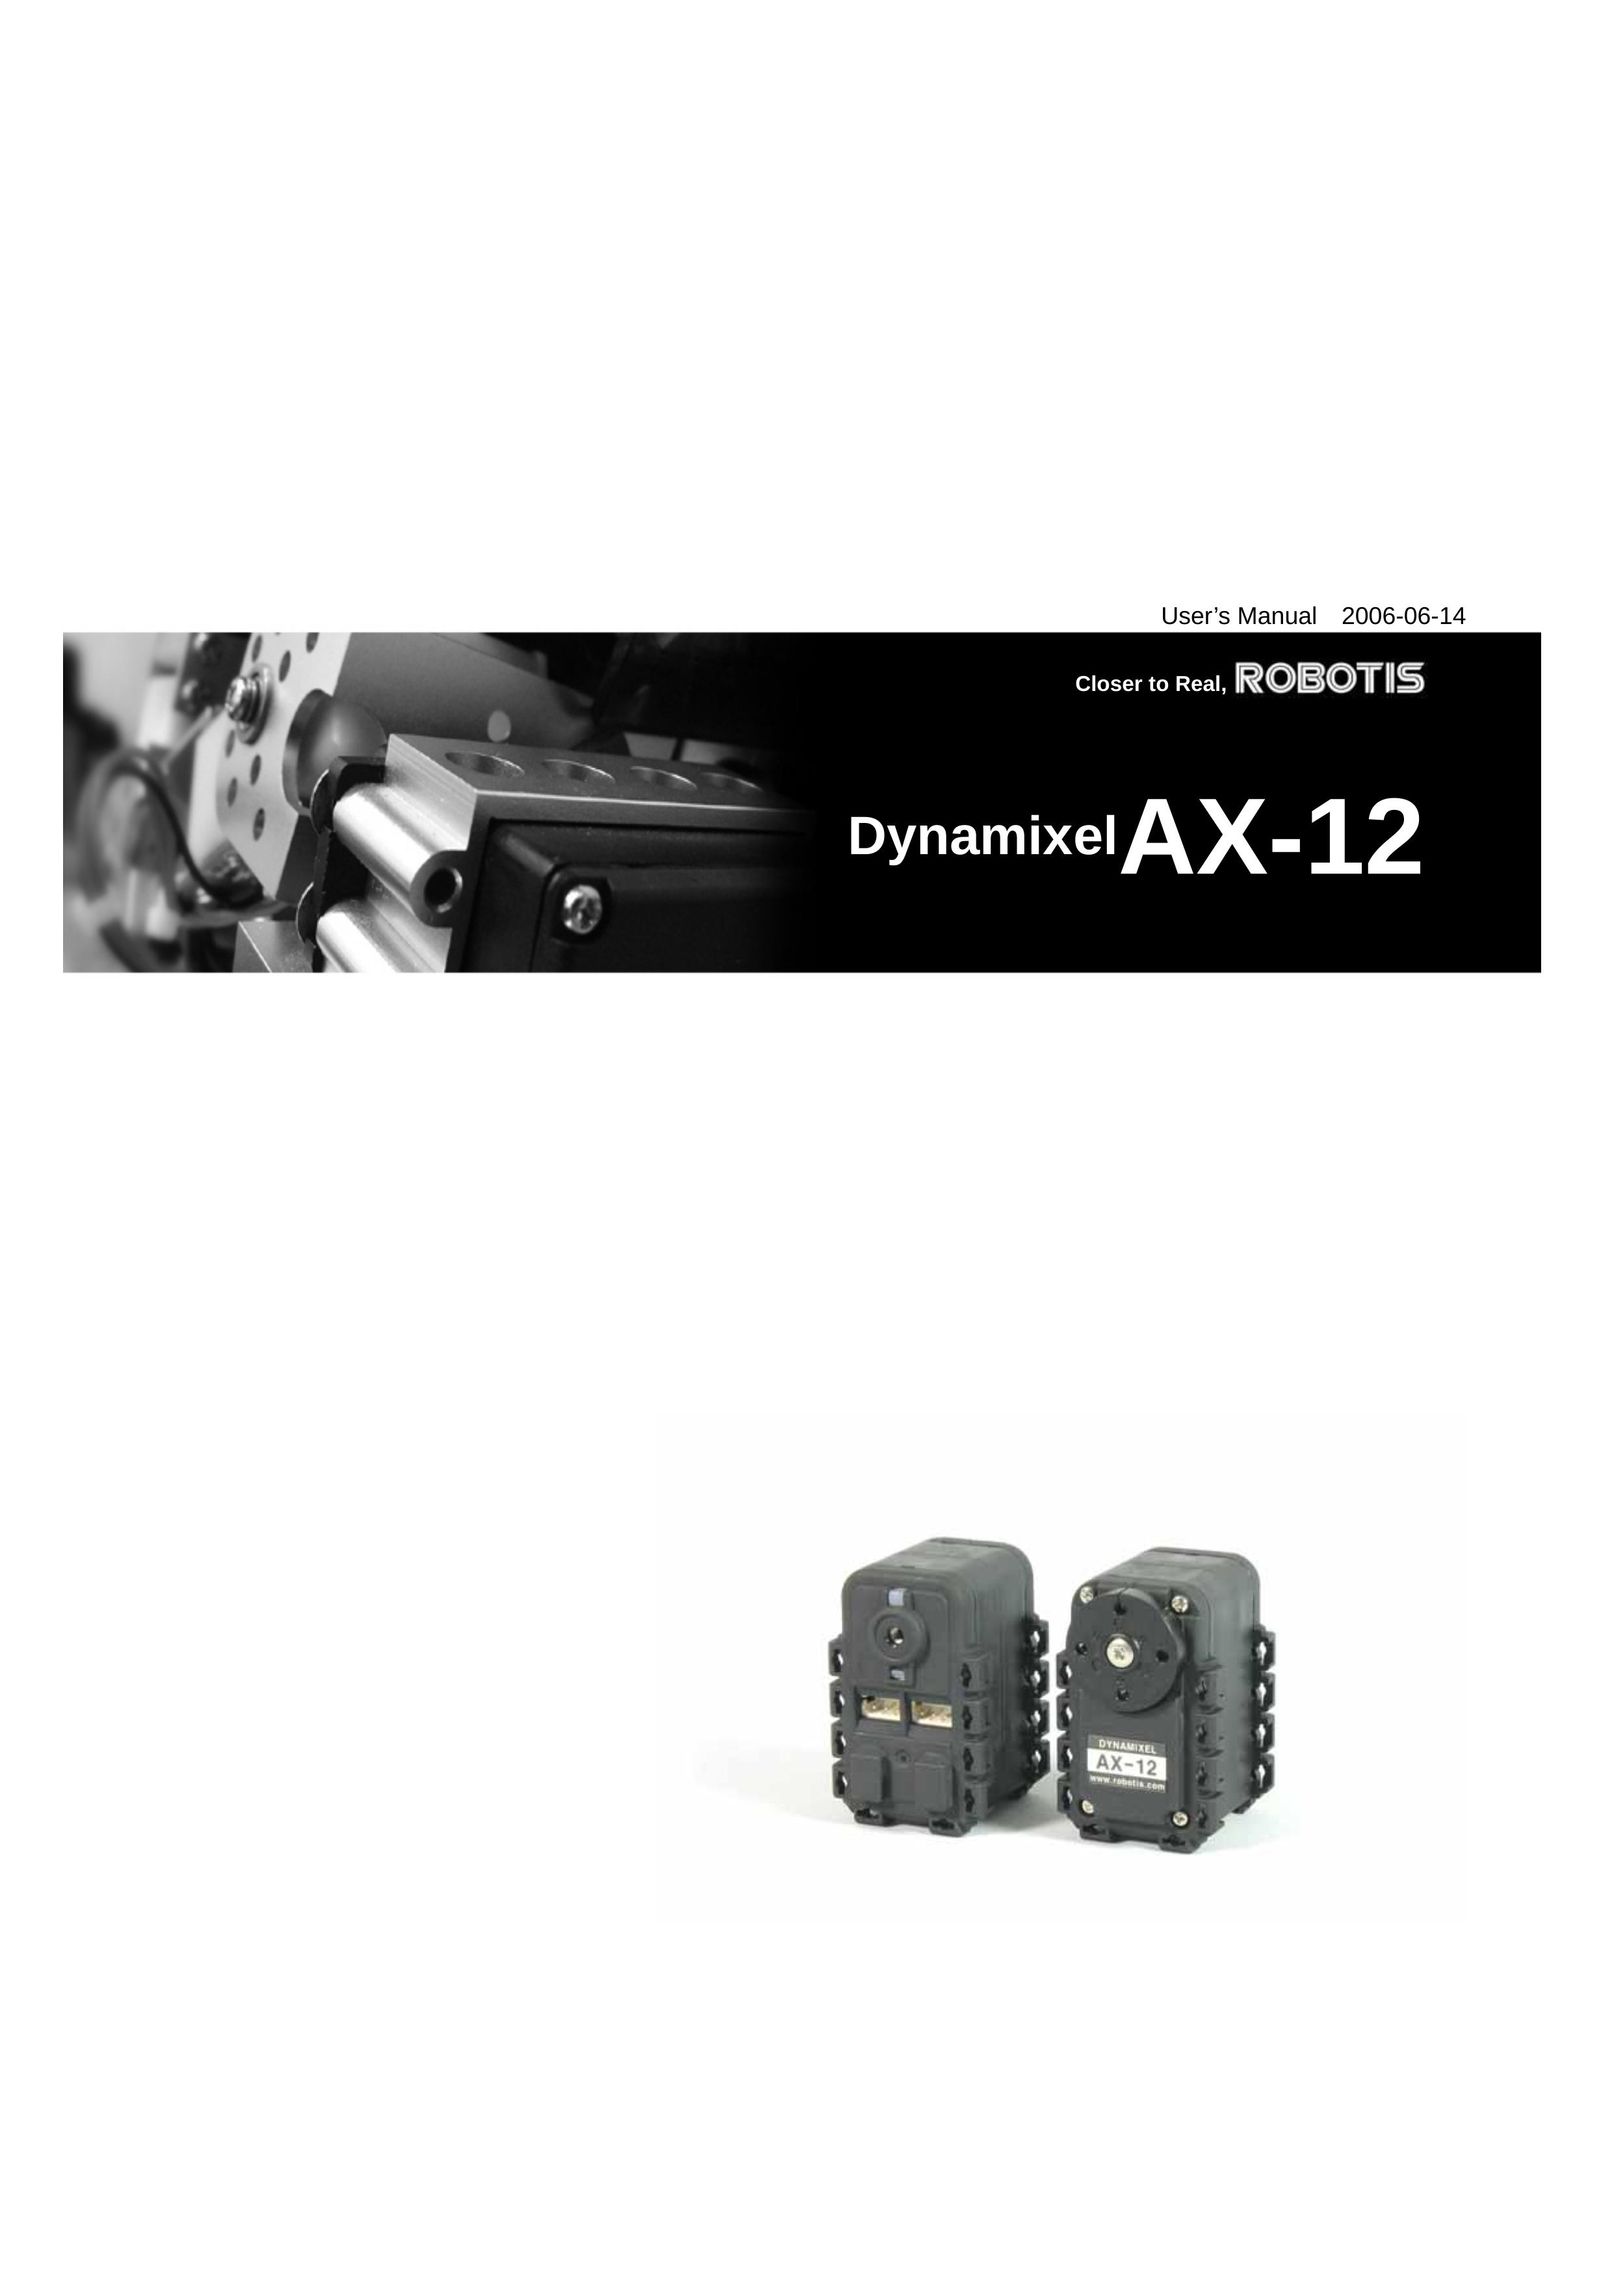 Axis Communications AX-12 Robotics User Manual